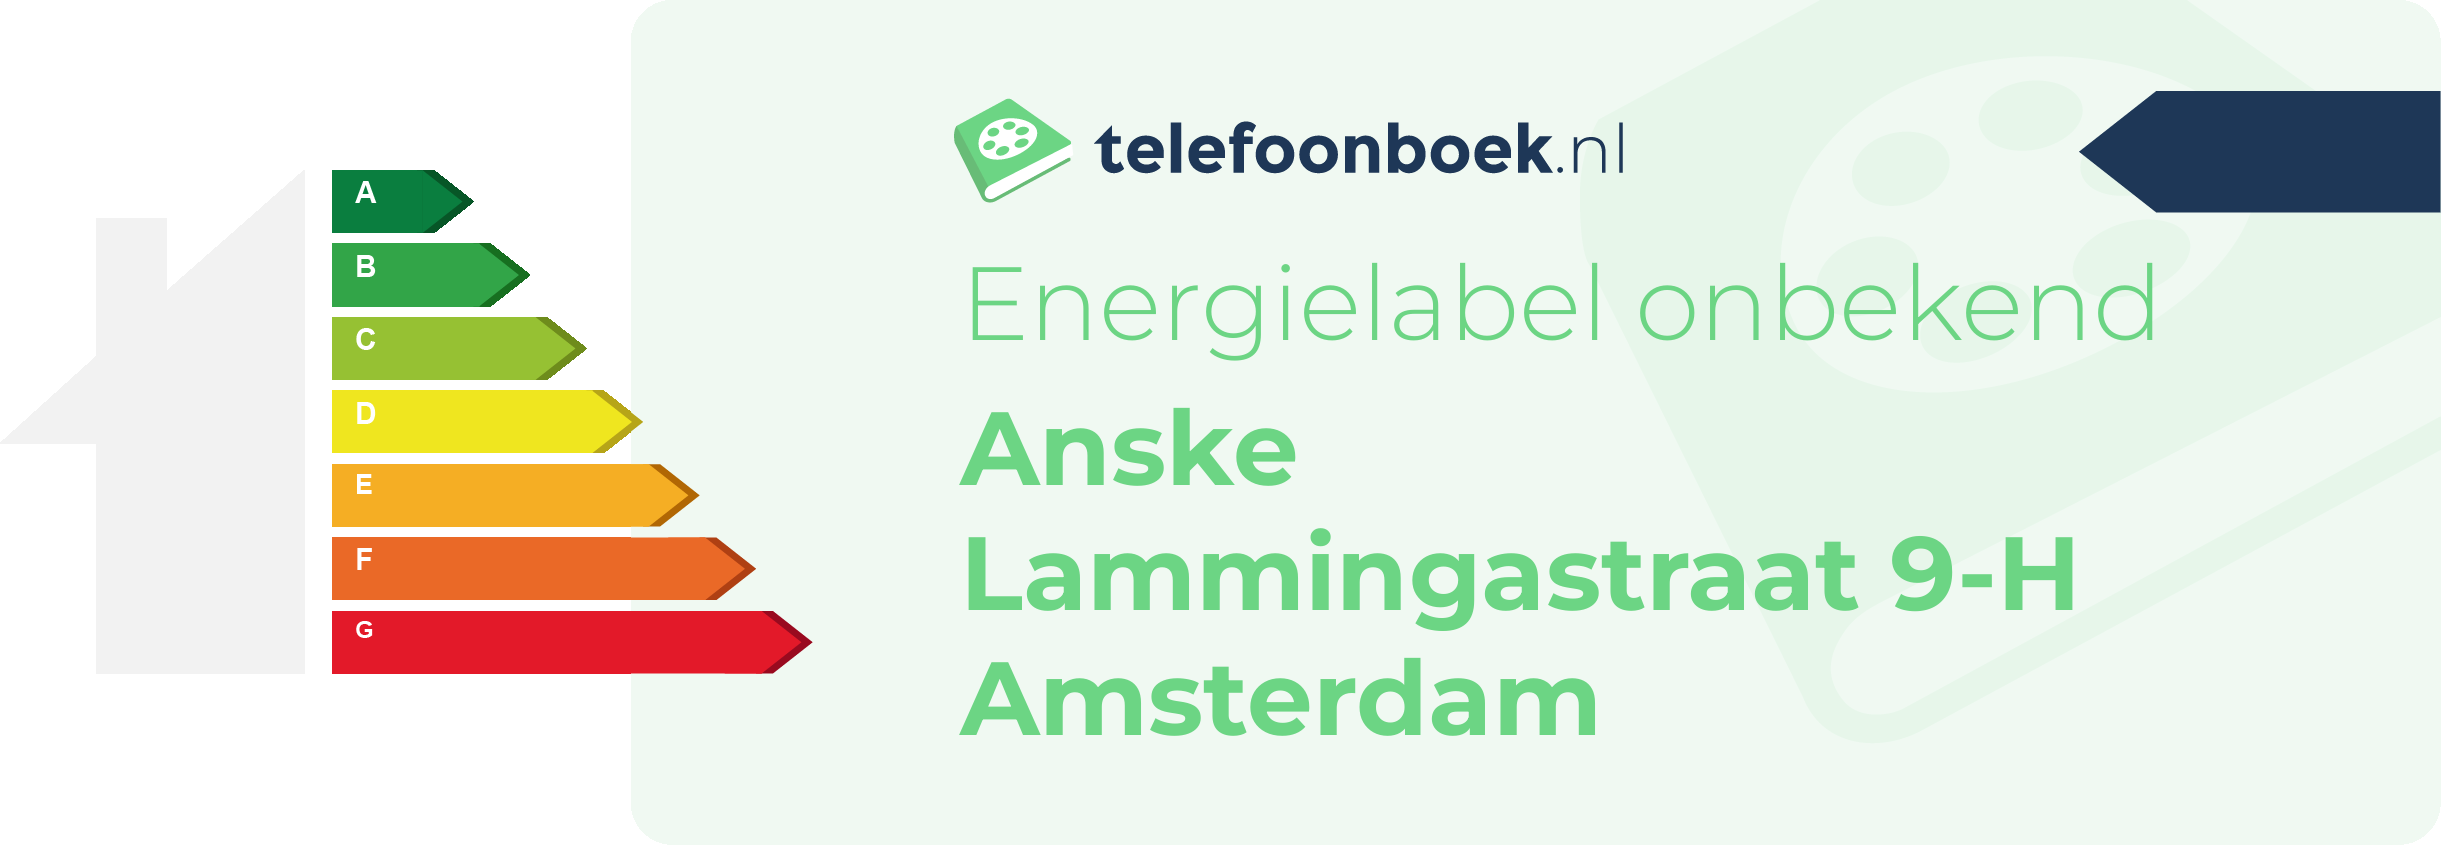 Energielabel Anske Lammingastraat 9-H Amsterdam